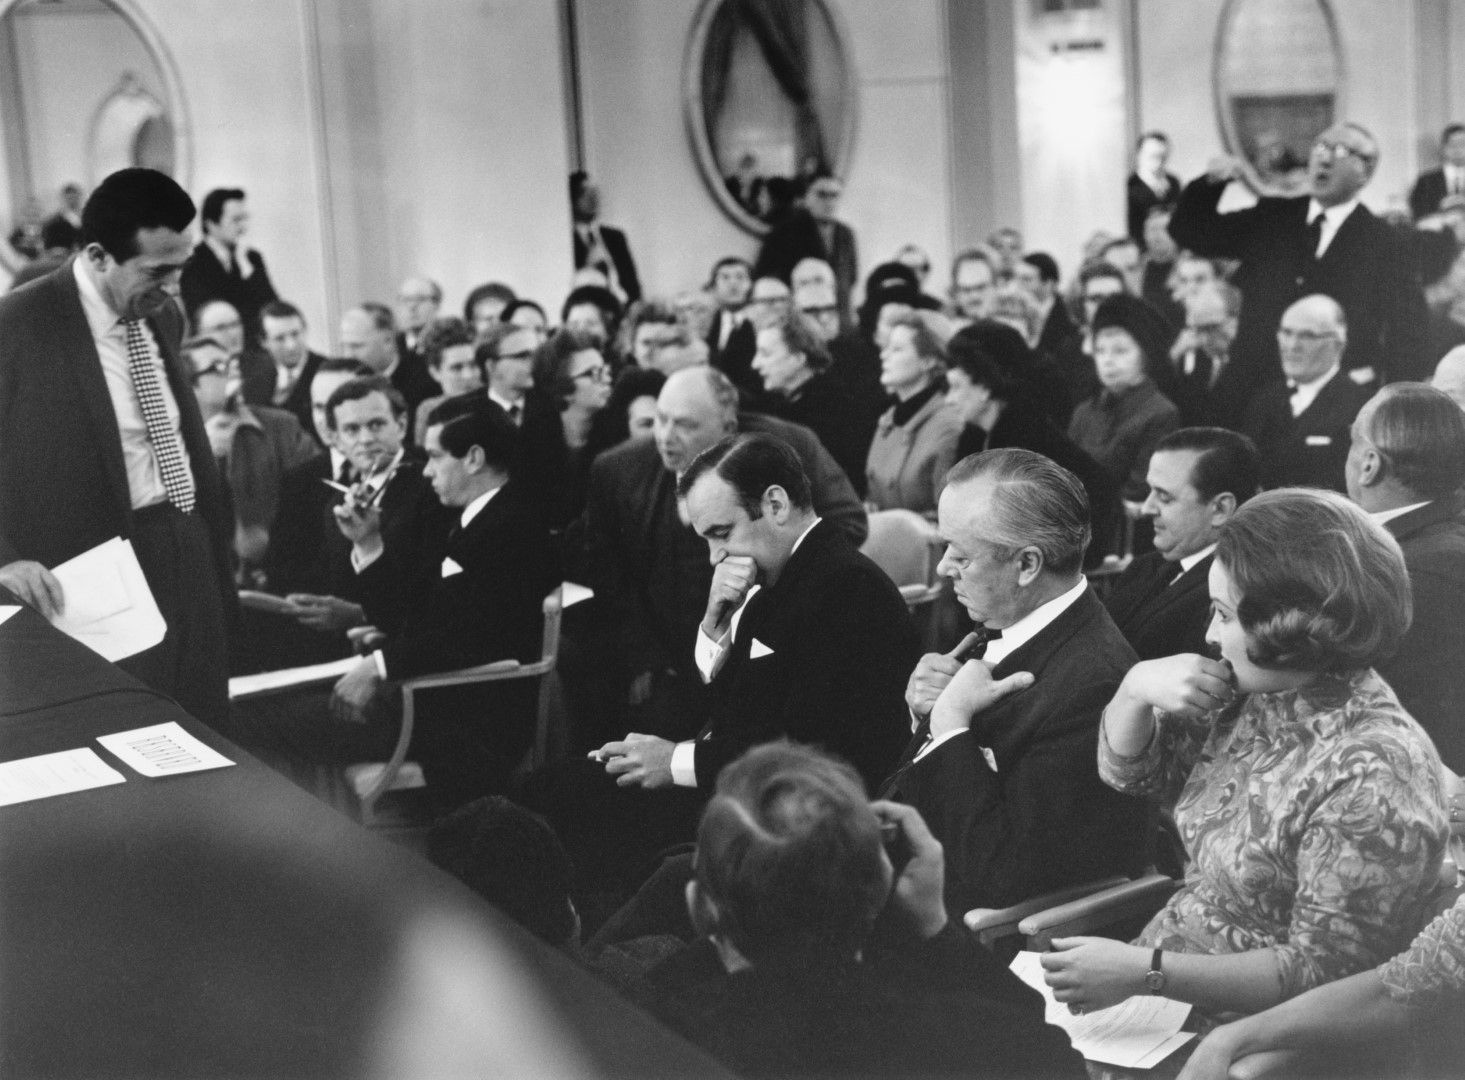 Съперниците Робърт Максуел, (изправен вляво) и Рупърт Мърдок (в средата) очакват гласуване на офертите им за вестник News Of The World по време на събрание на акционерите в Лондон, 2 януари 1969 г.